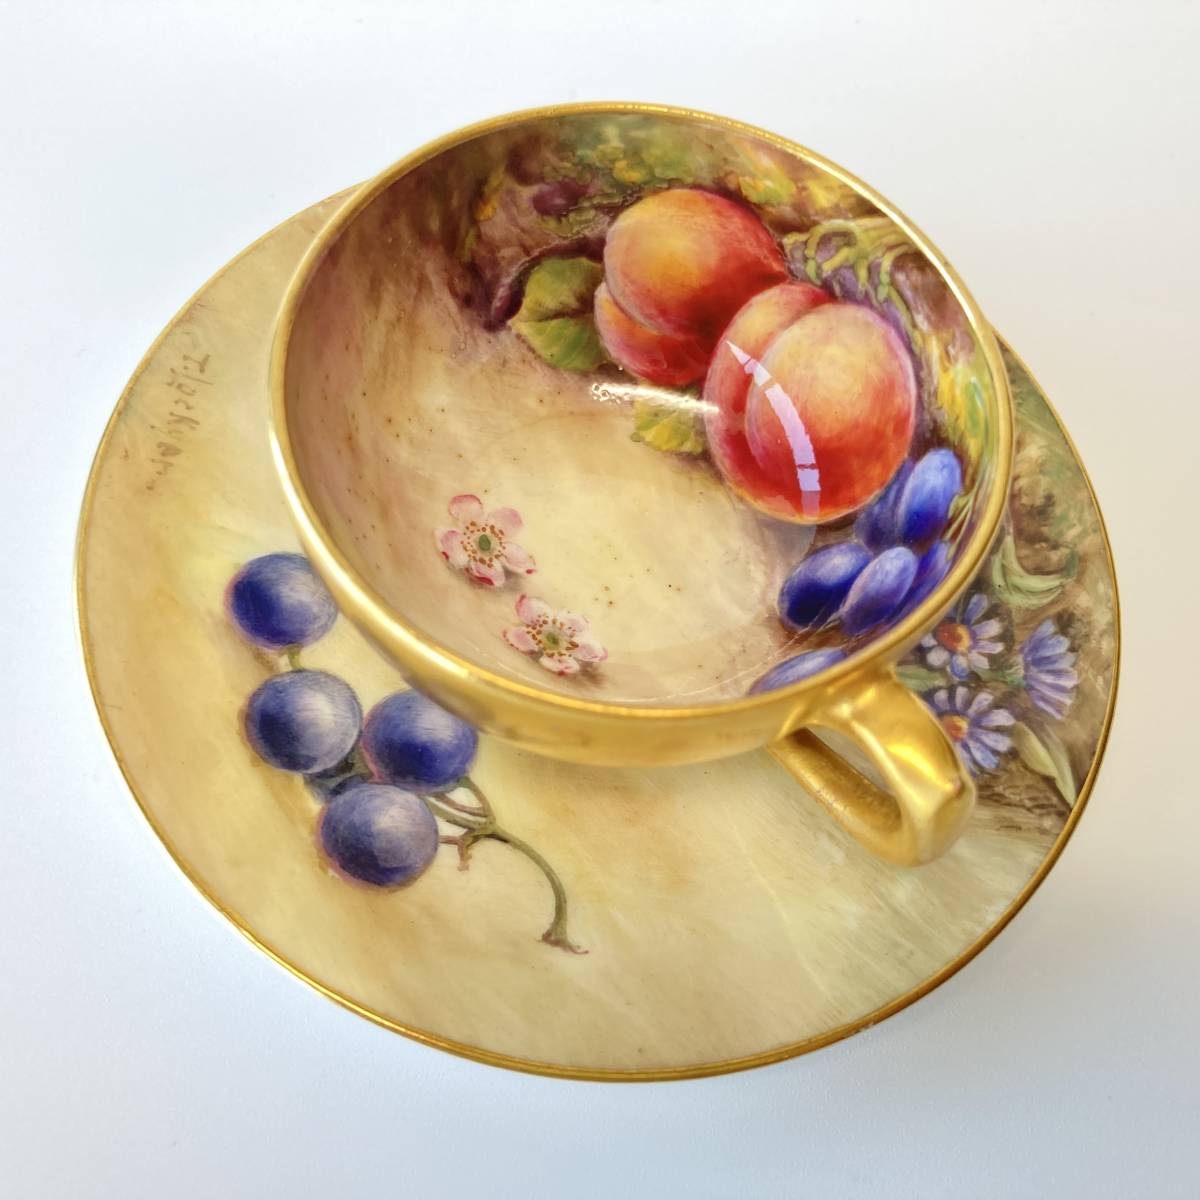 [ высший класс ] Royal Worcester ROYAL WORCESTERpe Inte do фрукты золотая краска маленькая чашка & блюдце фрукты Британия античный 6